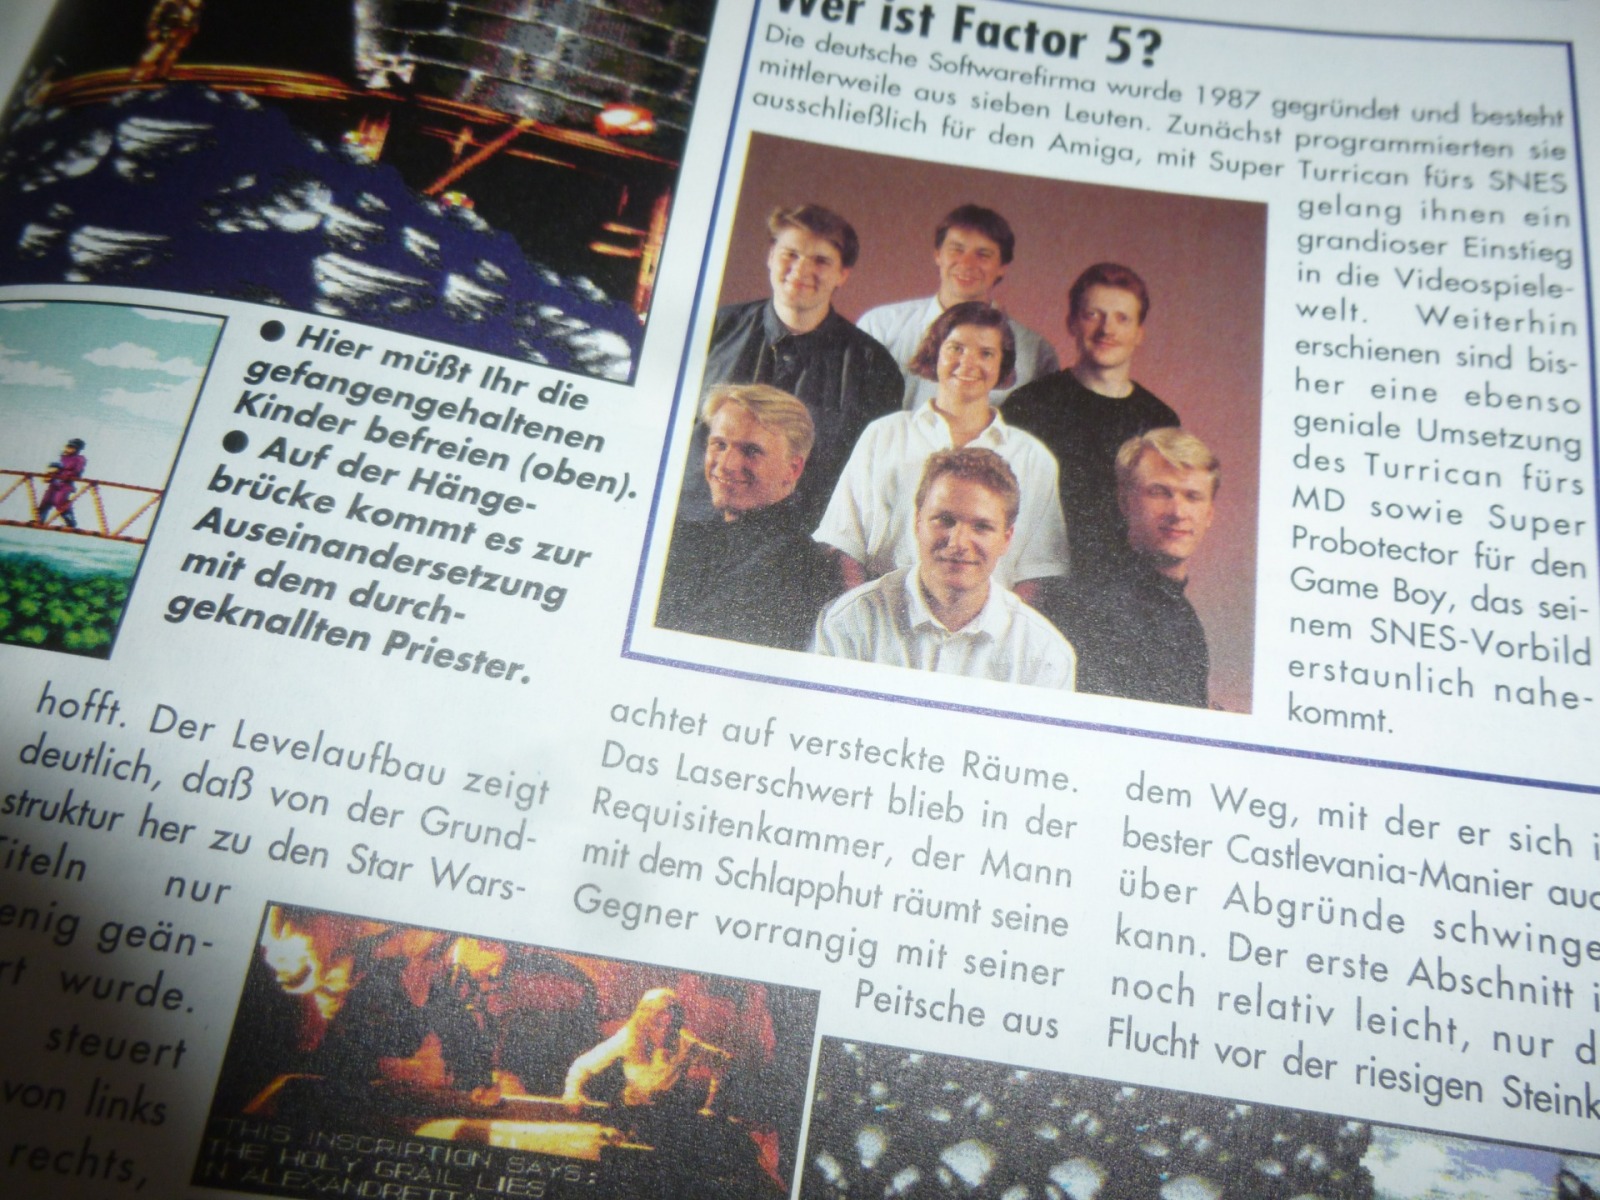 Play Time - Das Computer- und Videospiele-Magazin - Ausgabe 12/94 1994 24